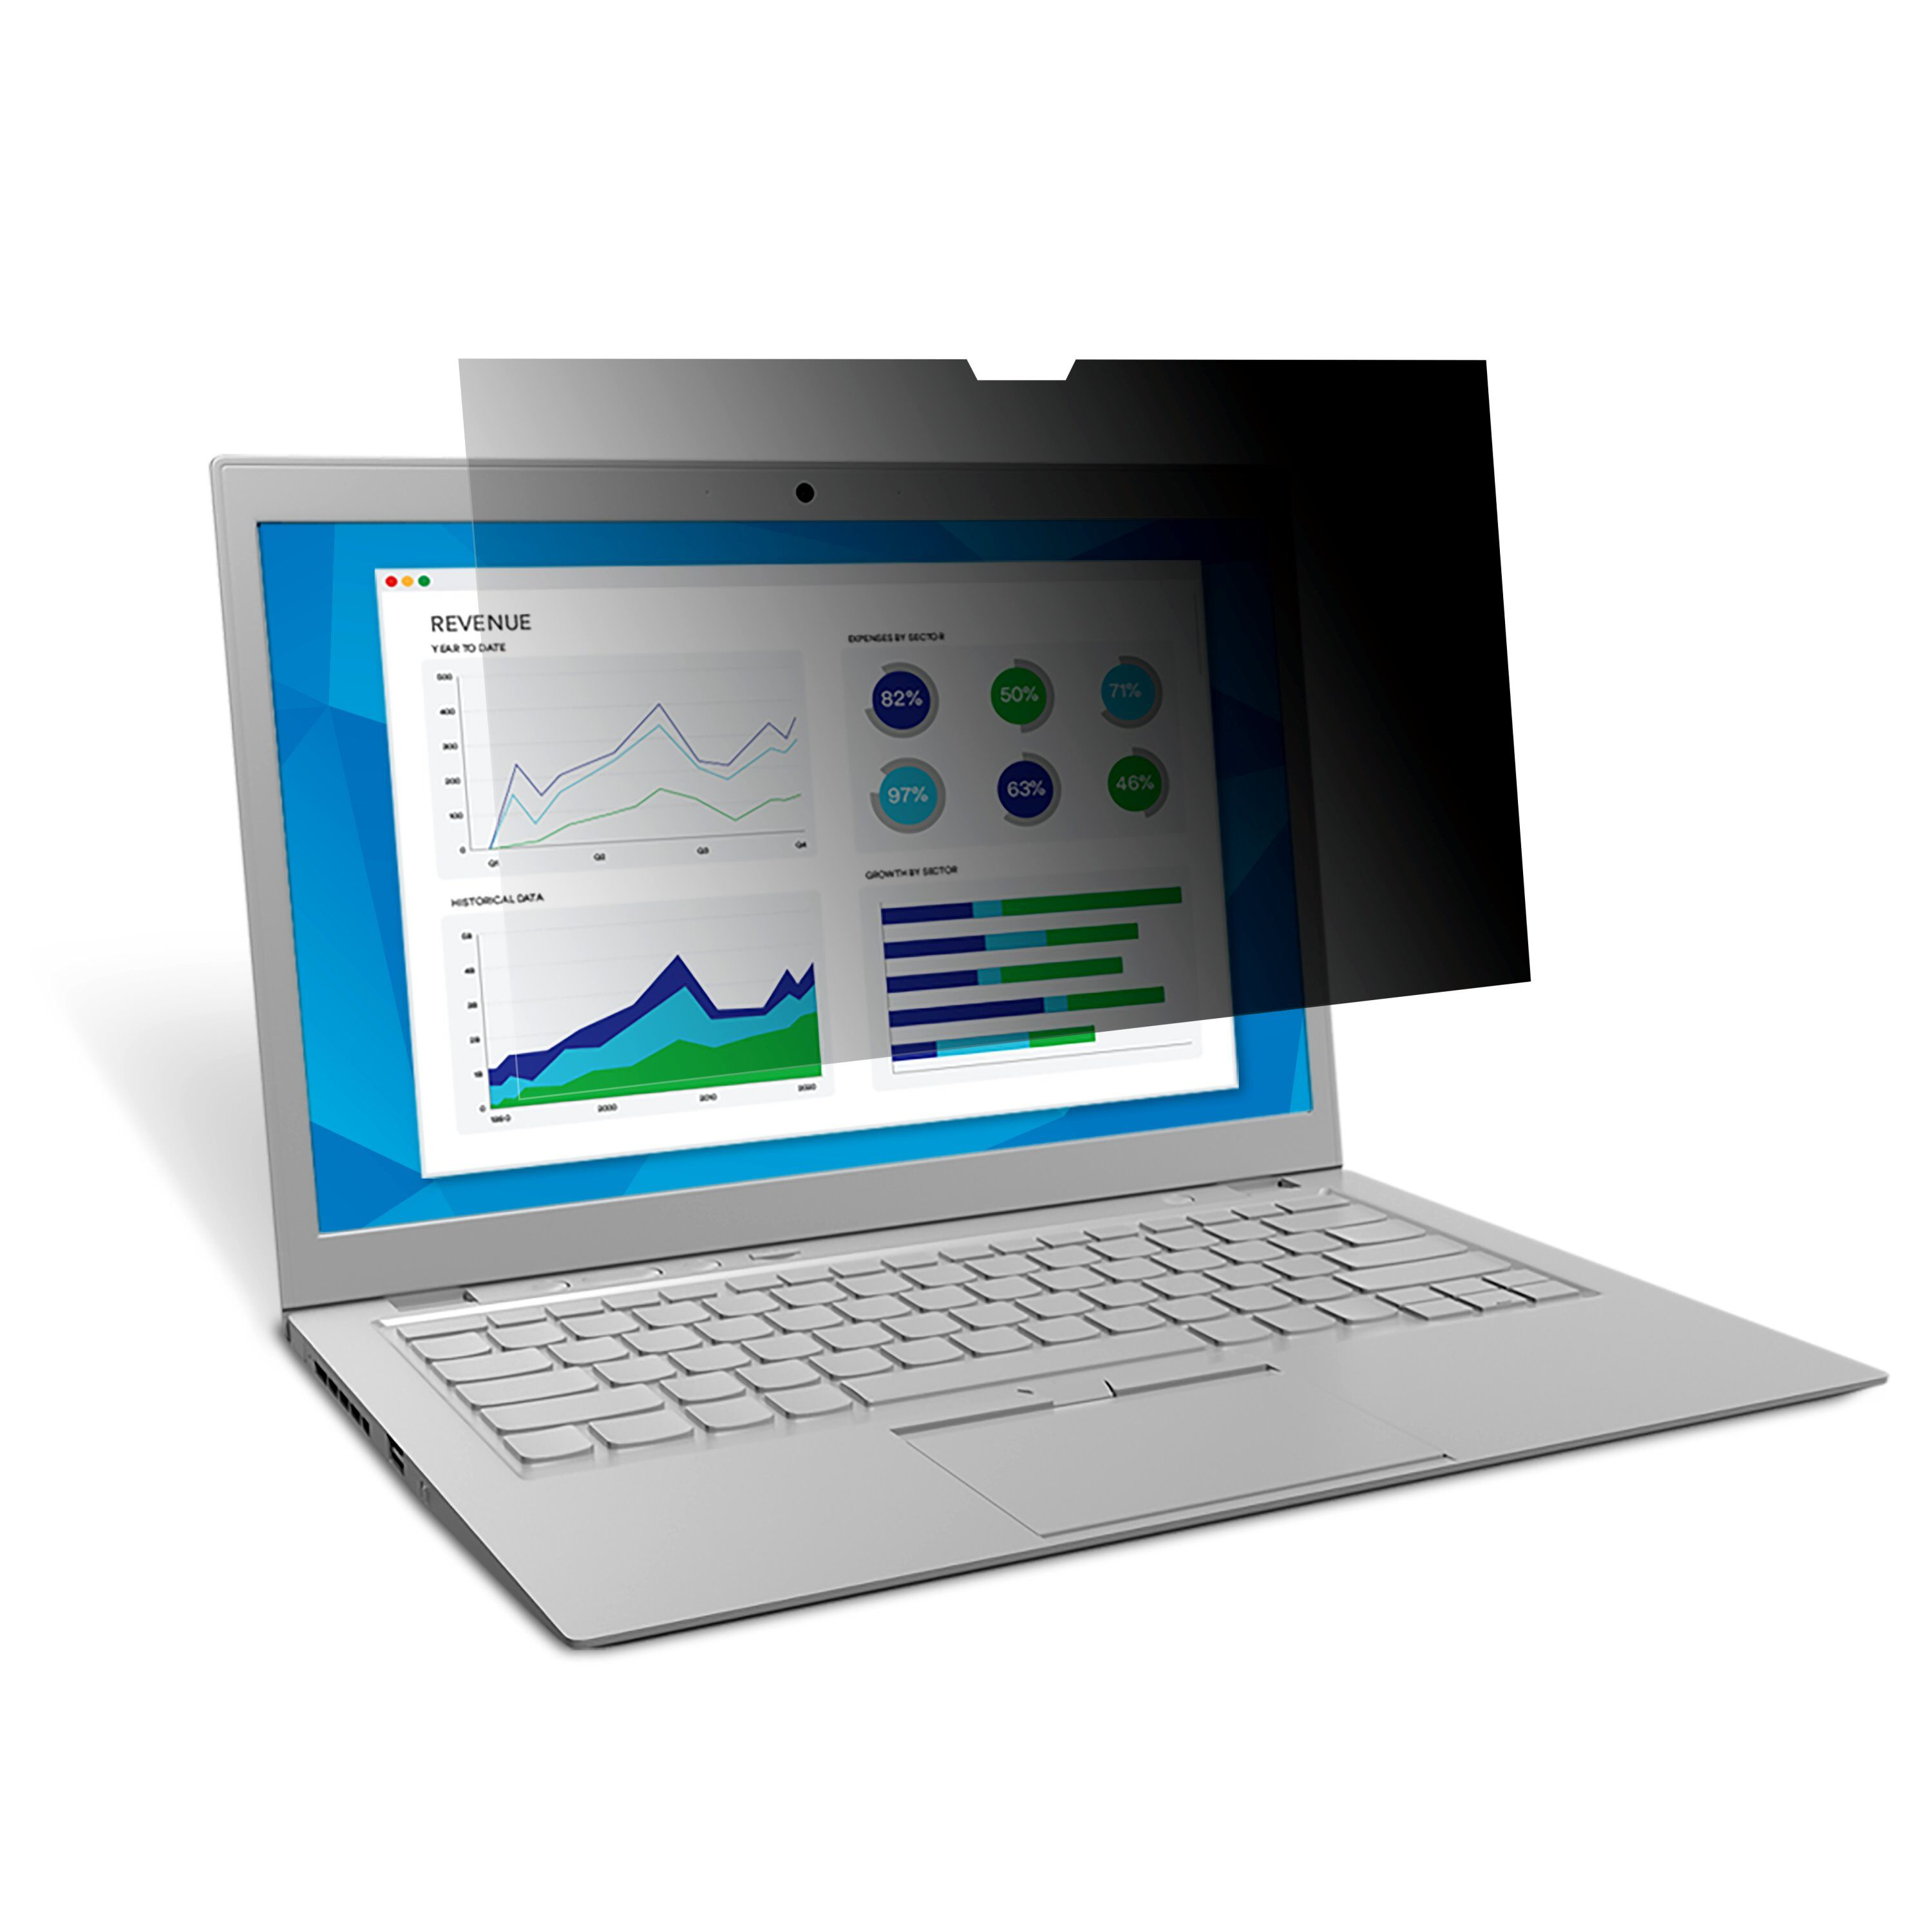 3M Blickschutzfilter for 12.5" Widescreen Laptop with COMPLY Attachment System - Blickschutzfilter für Notebook - 31,8 cm Breitbild (12,5" Diagonale)